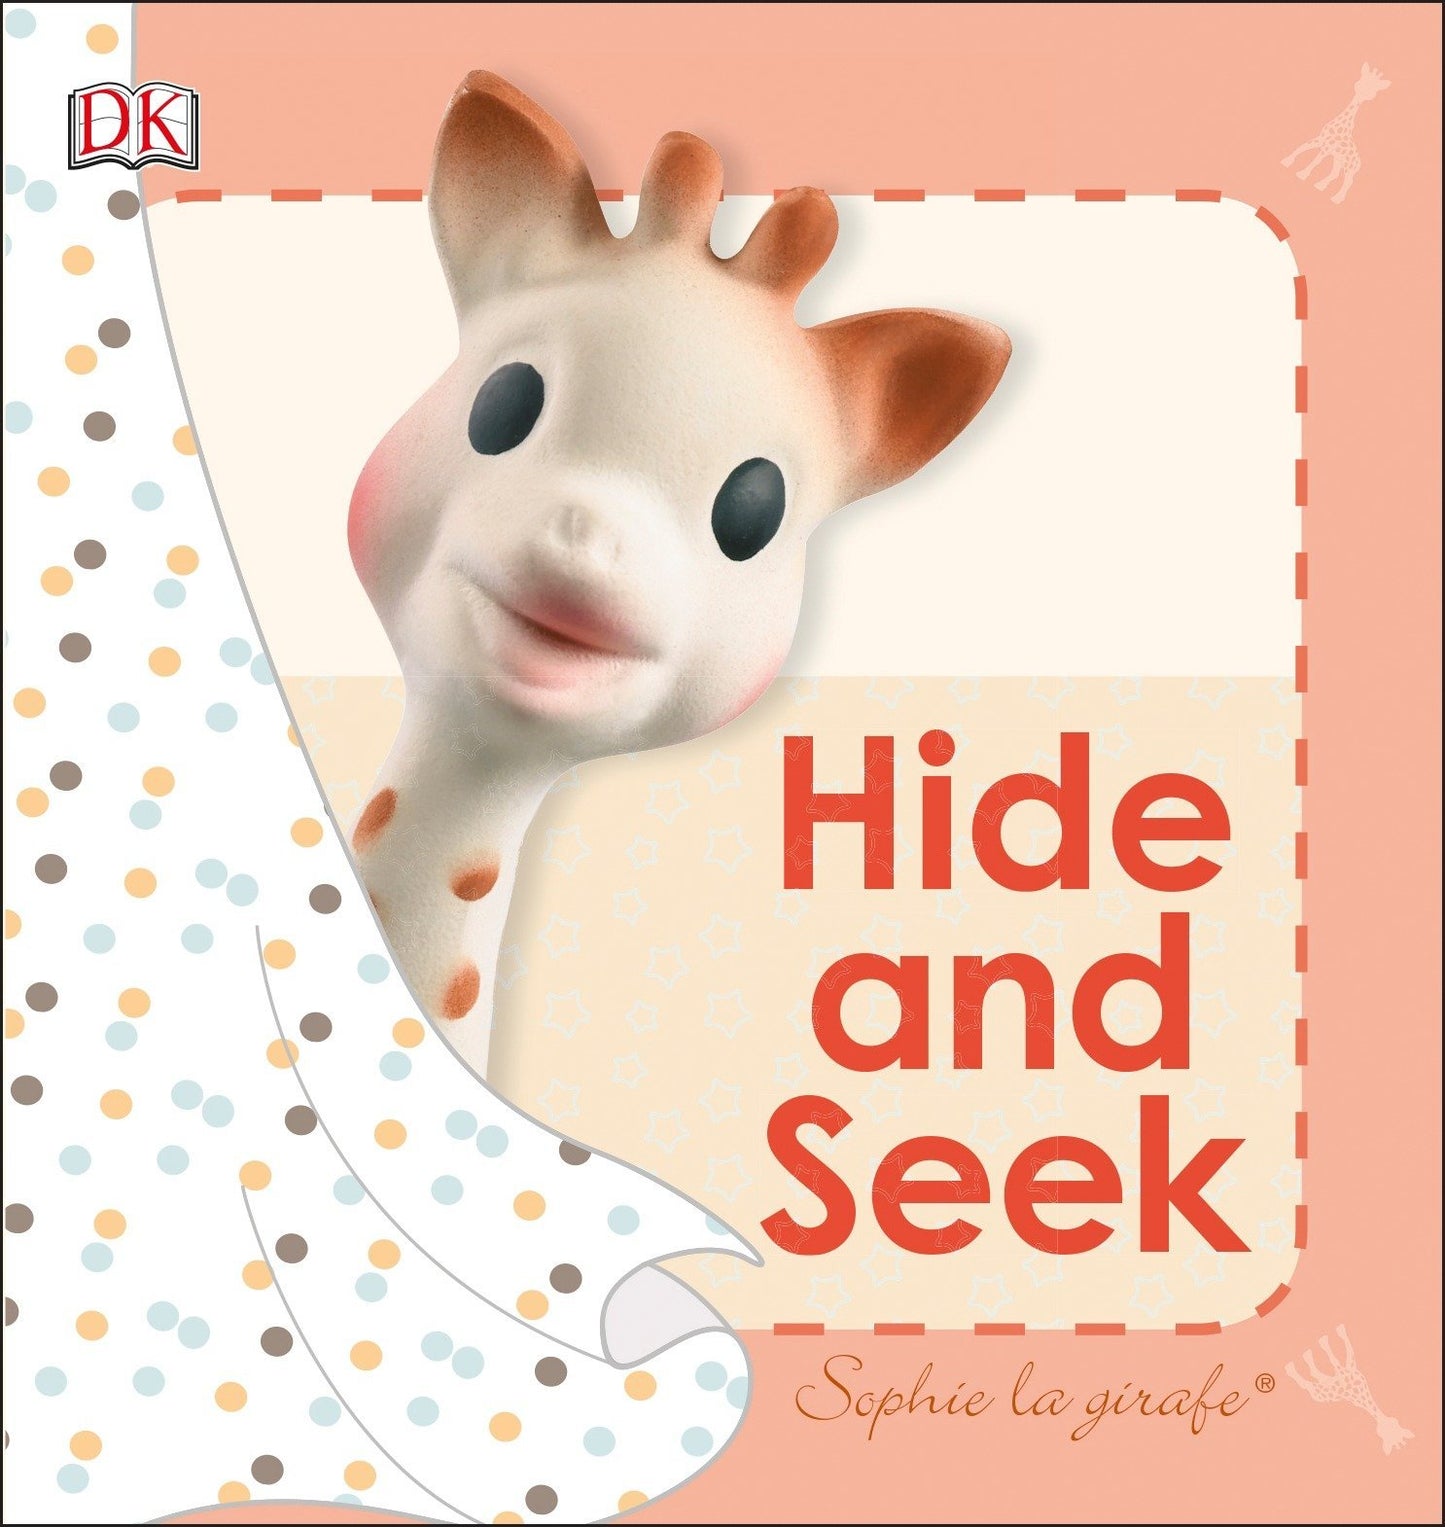 Sophie la girafe: Hide and Seek